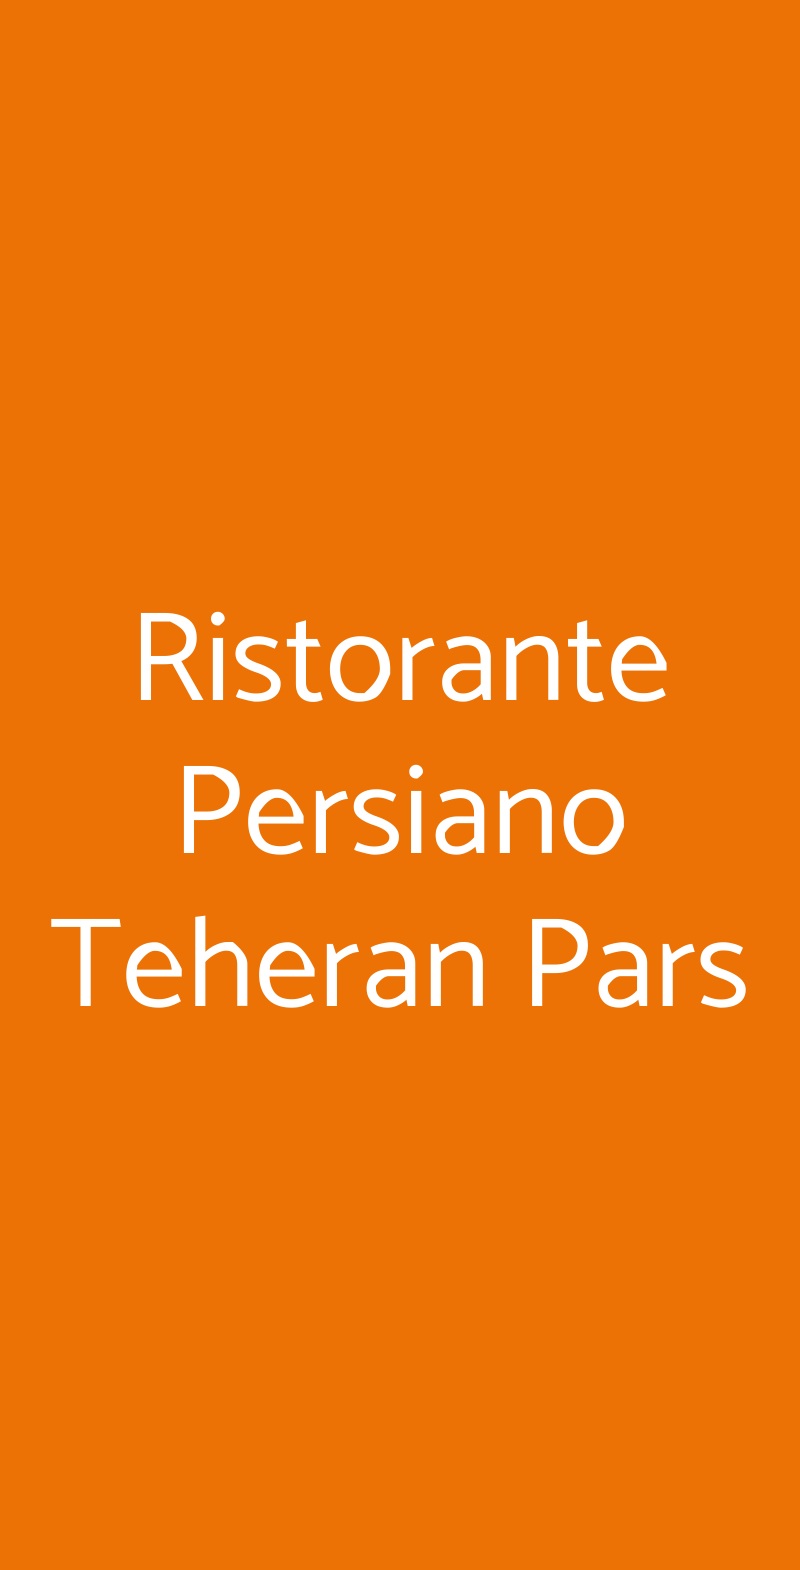 Ristorante Persiano Teheran Pars Abano Terme menù 1 pagina